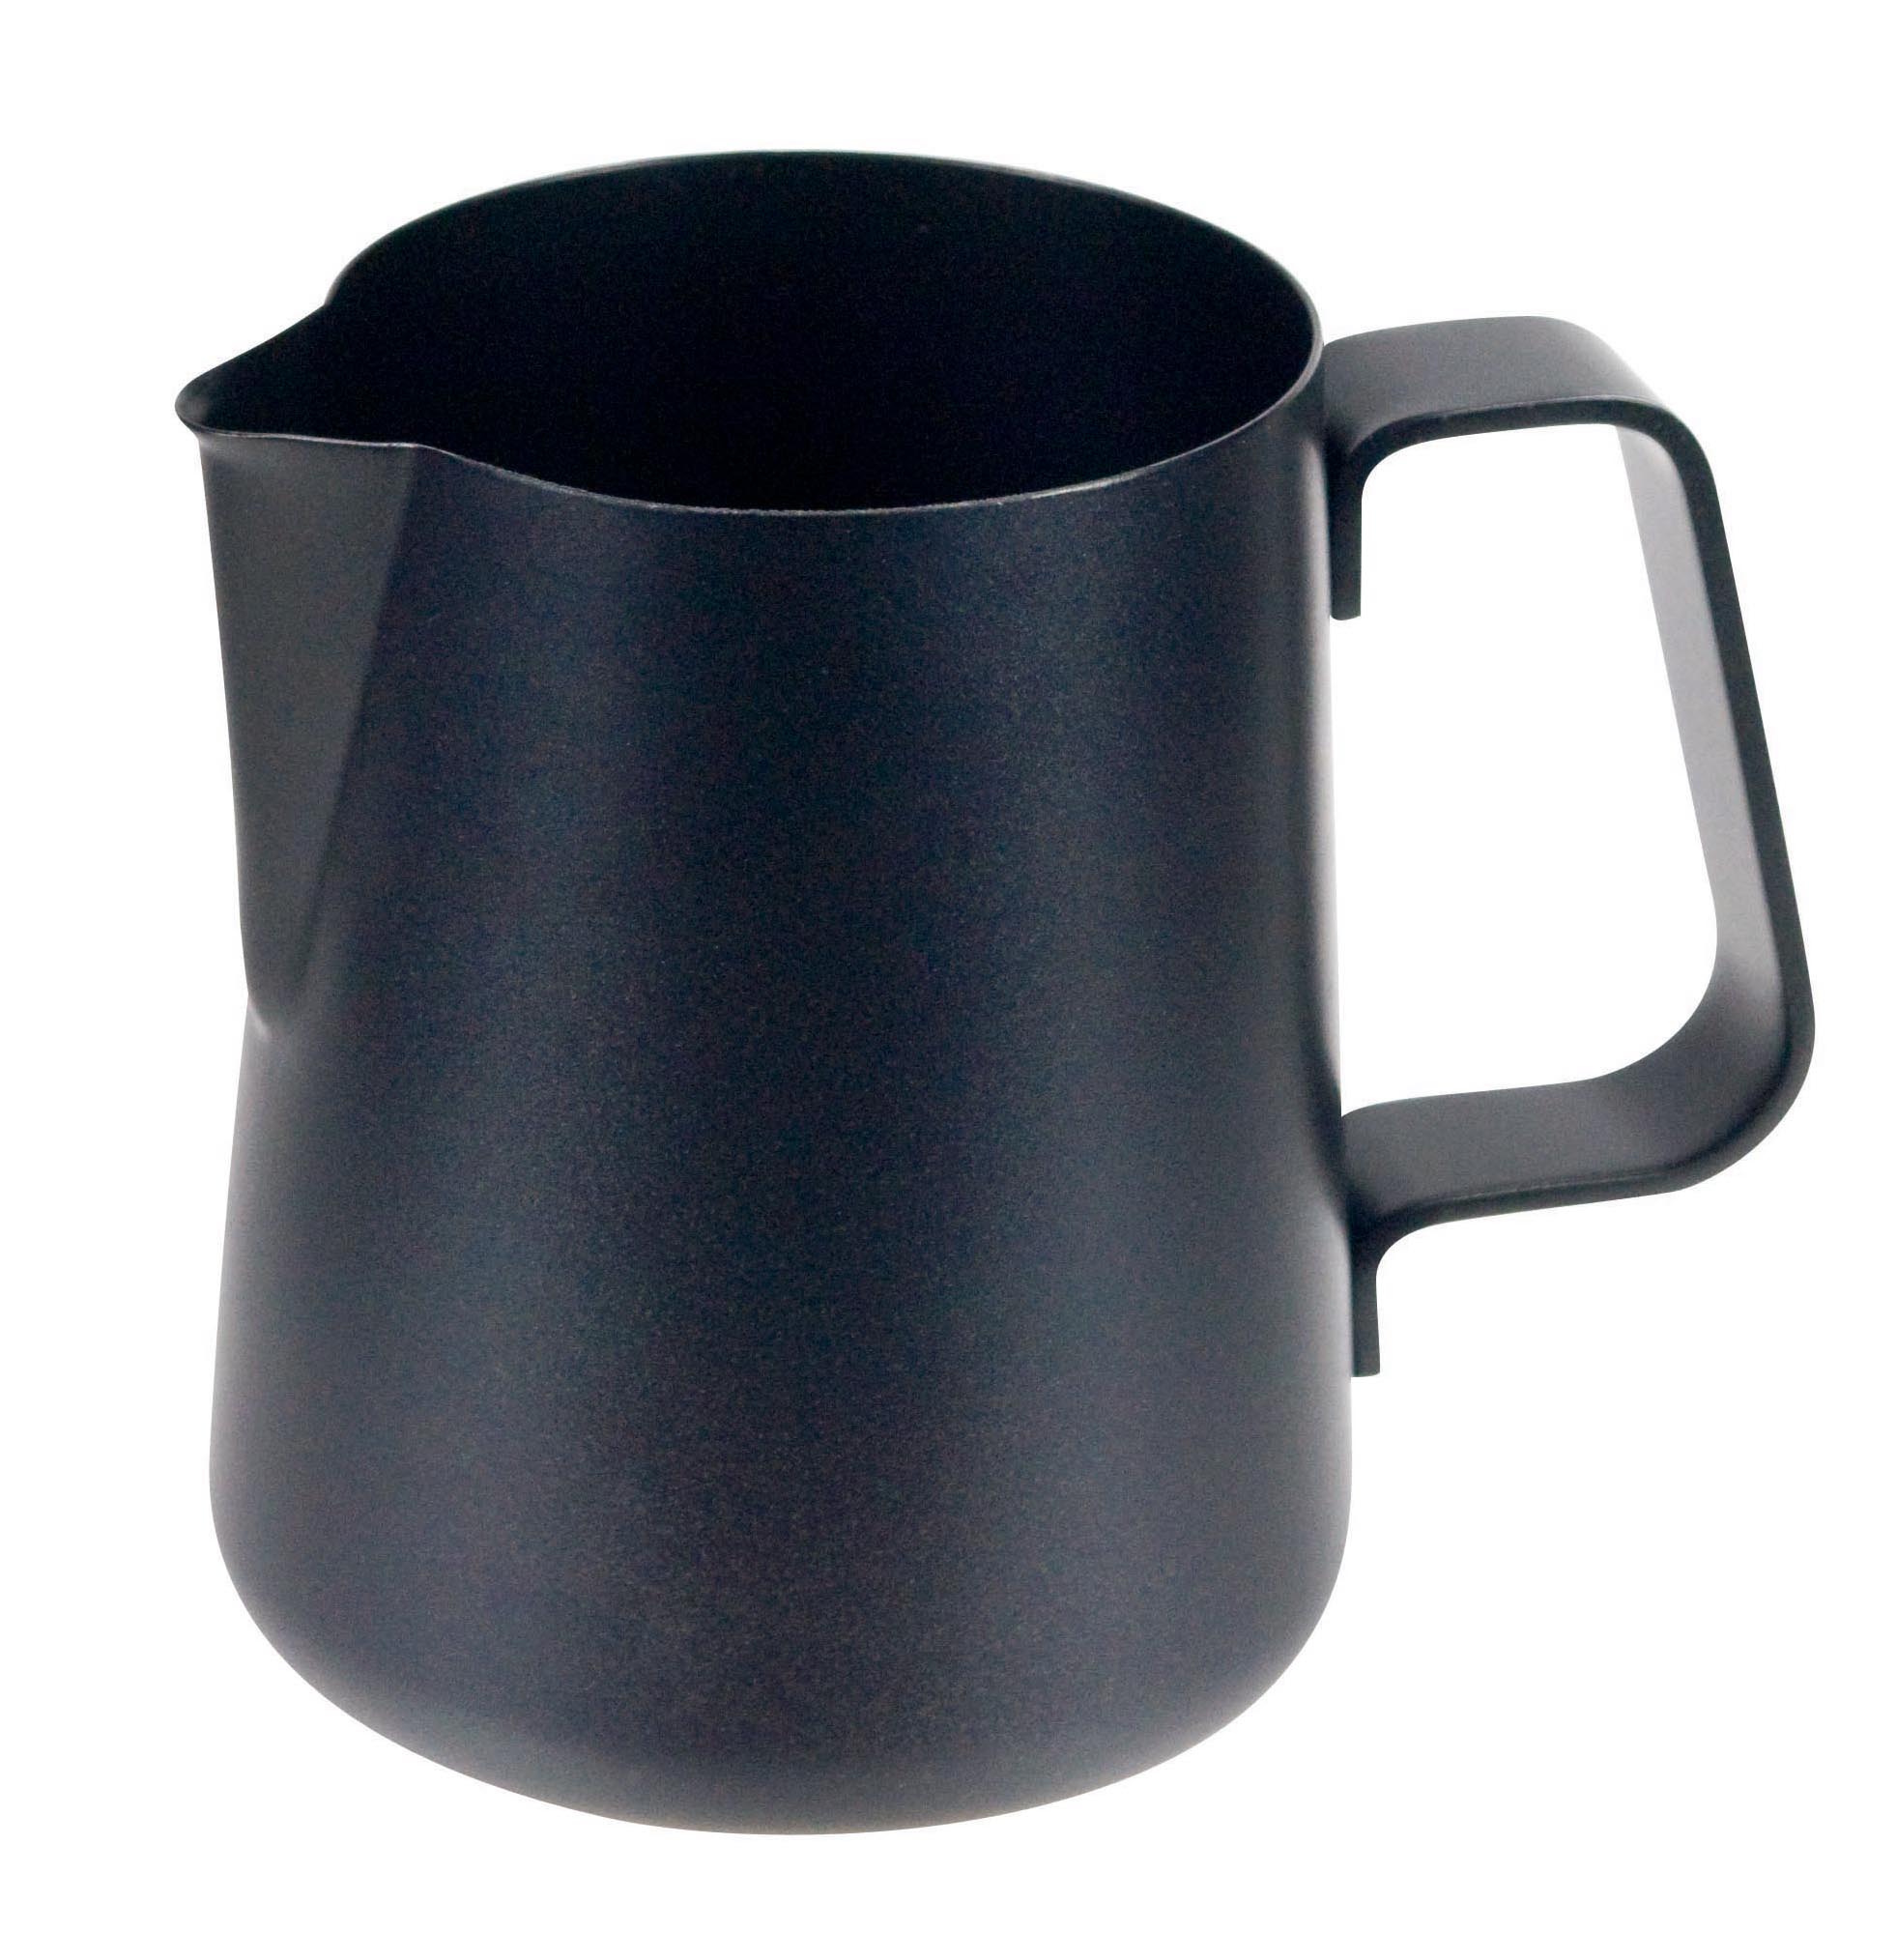 Non-stick coated cappuccino jug 